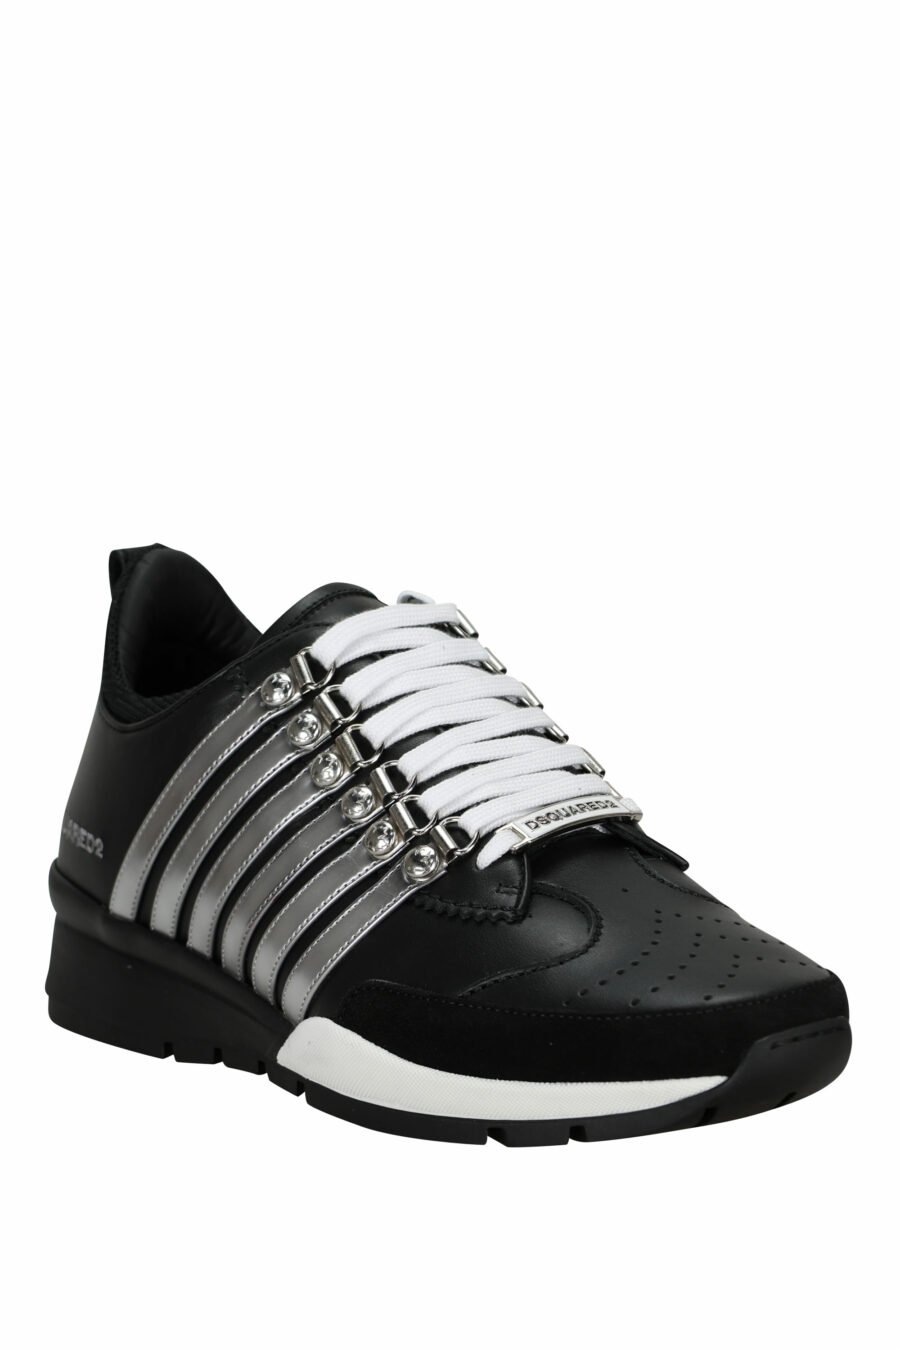 Zapatillas negras con lineas plateadas y suela bicolor - 8055777301289 1